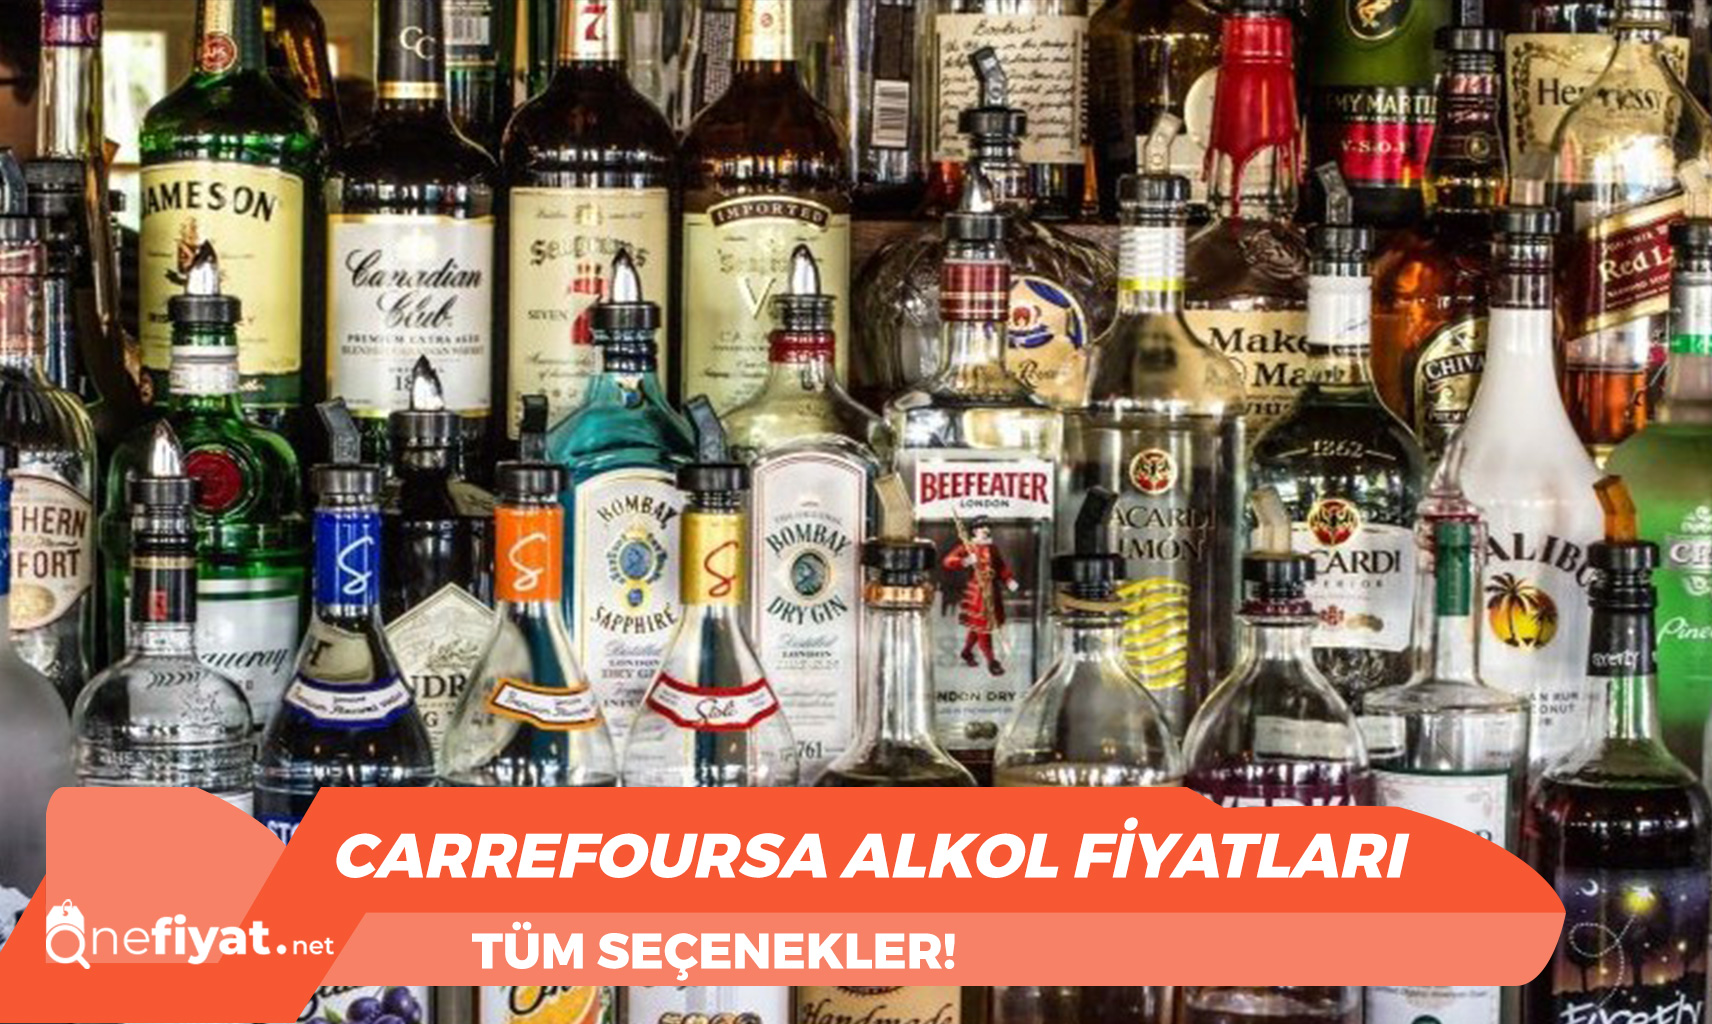 CarrefourSA Alkol Fiyatları